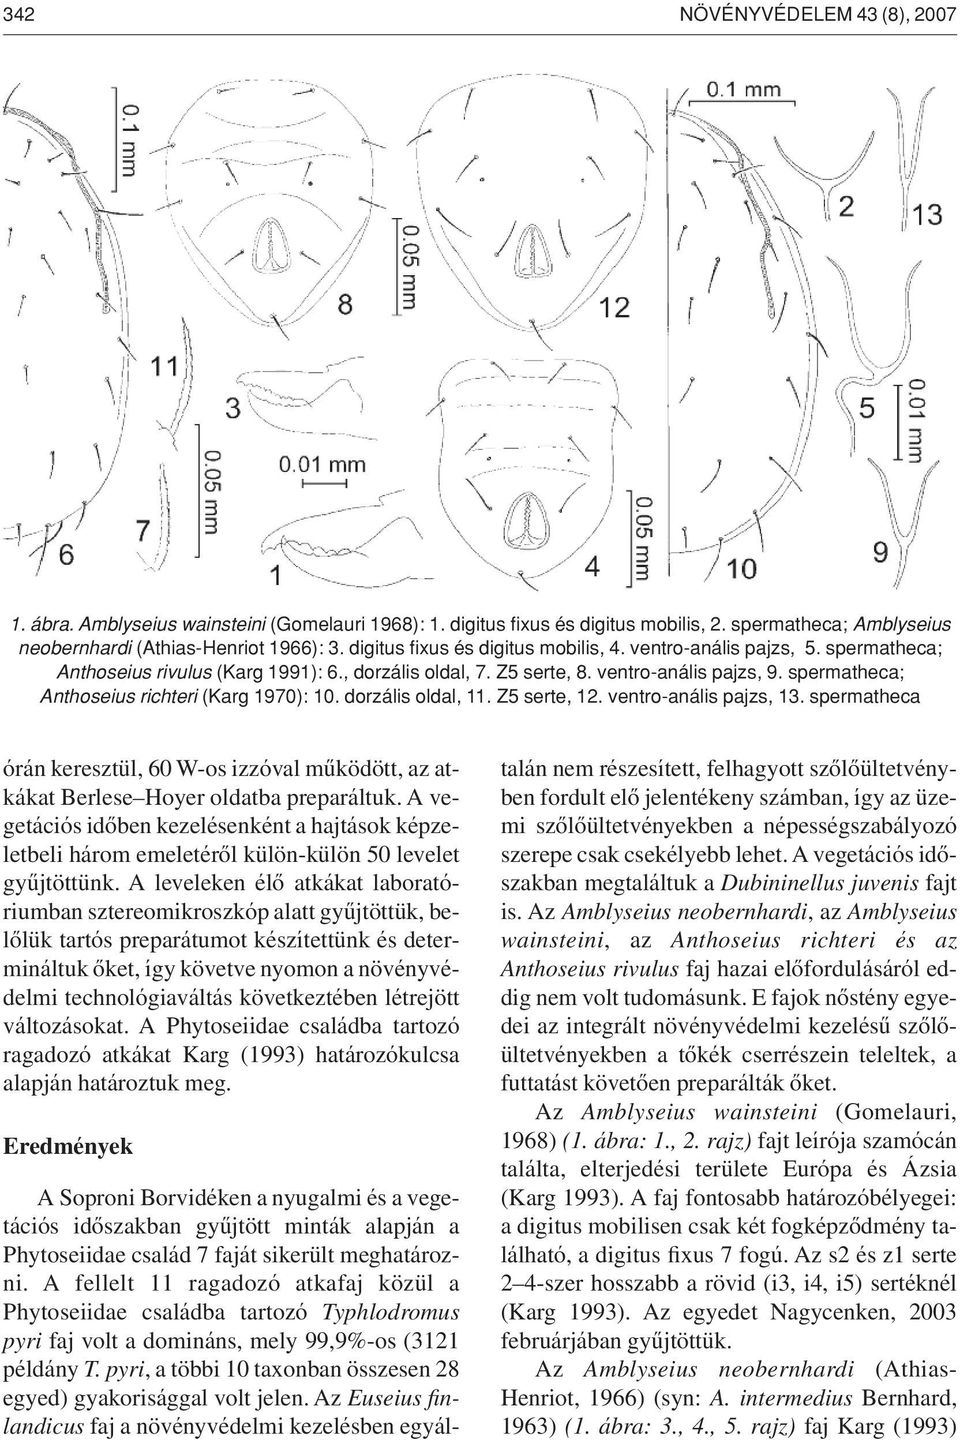 spermatheca; Anthoseius richteri (Karg 1970): 10. dorzális oldal, 11. Z5 serte, 12. ventro-anális pajzs, 13.